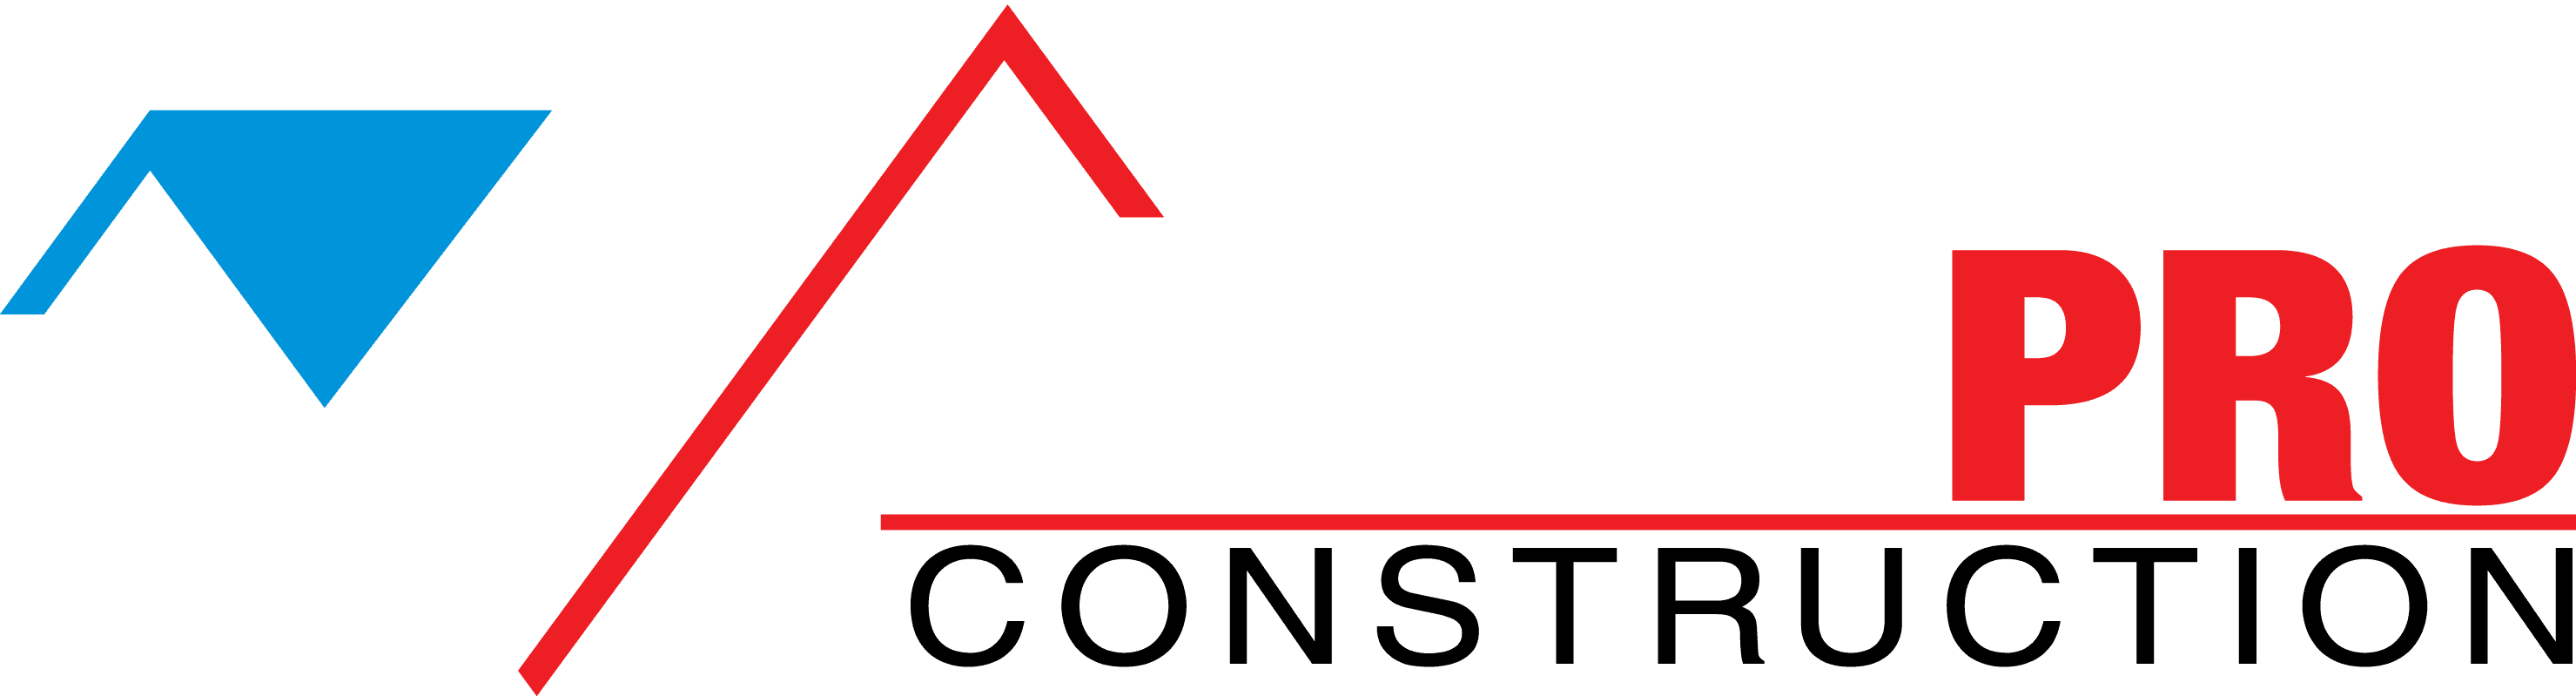 united proconstruction logo